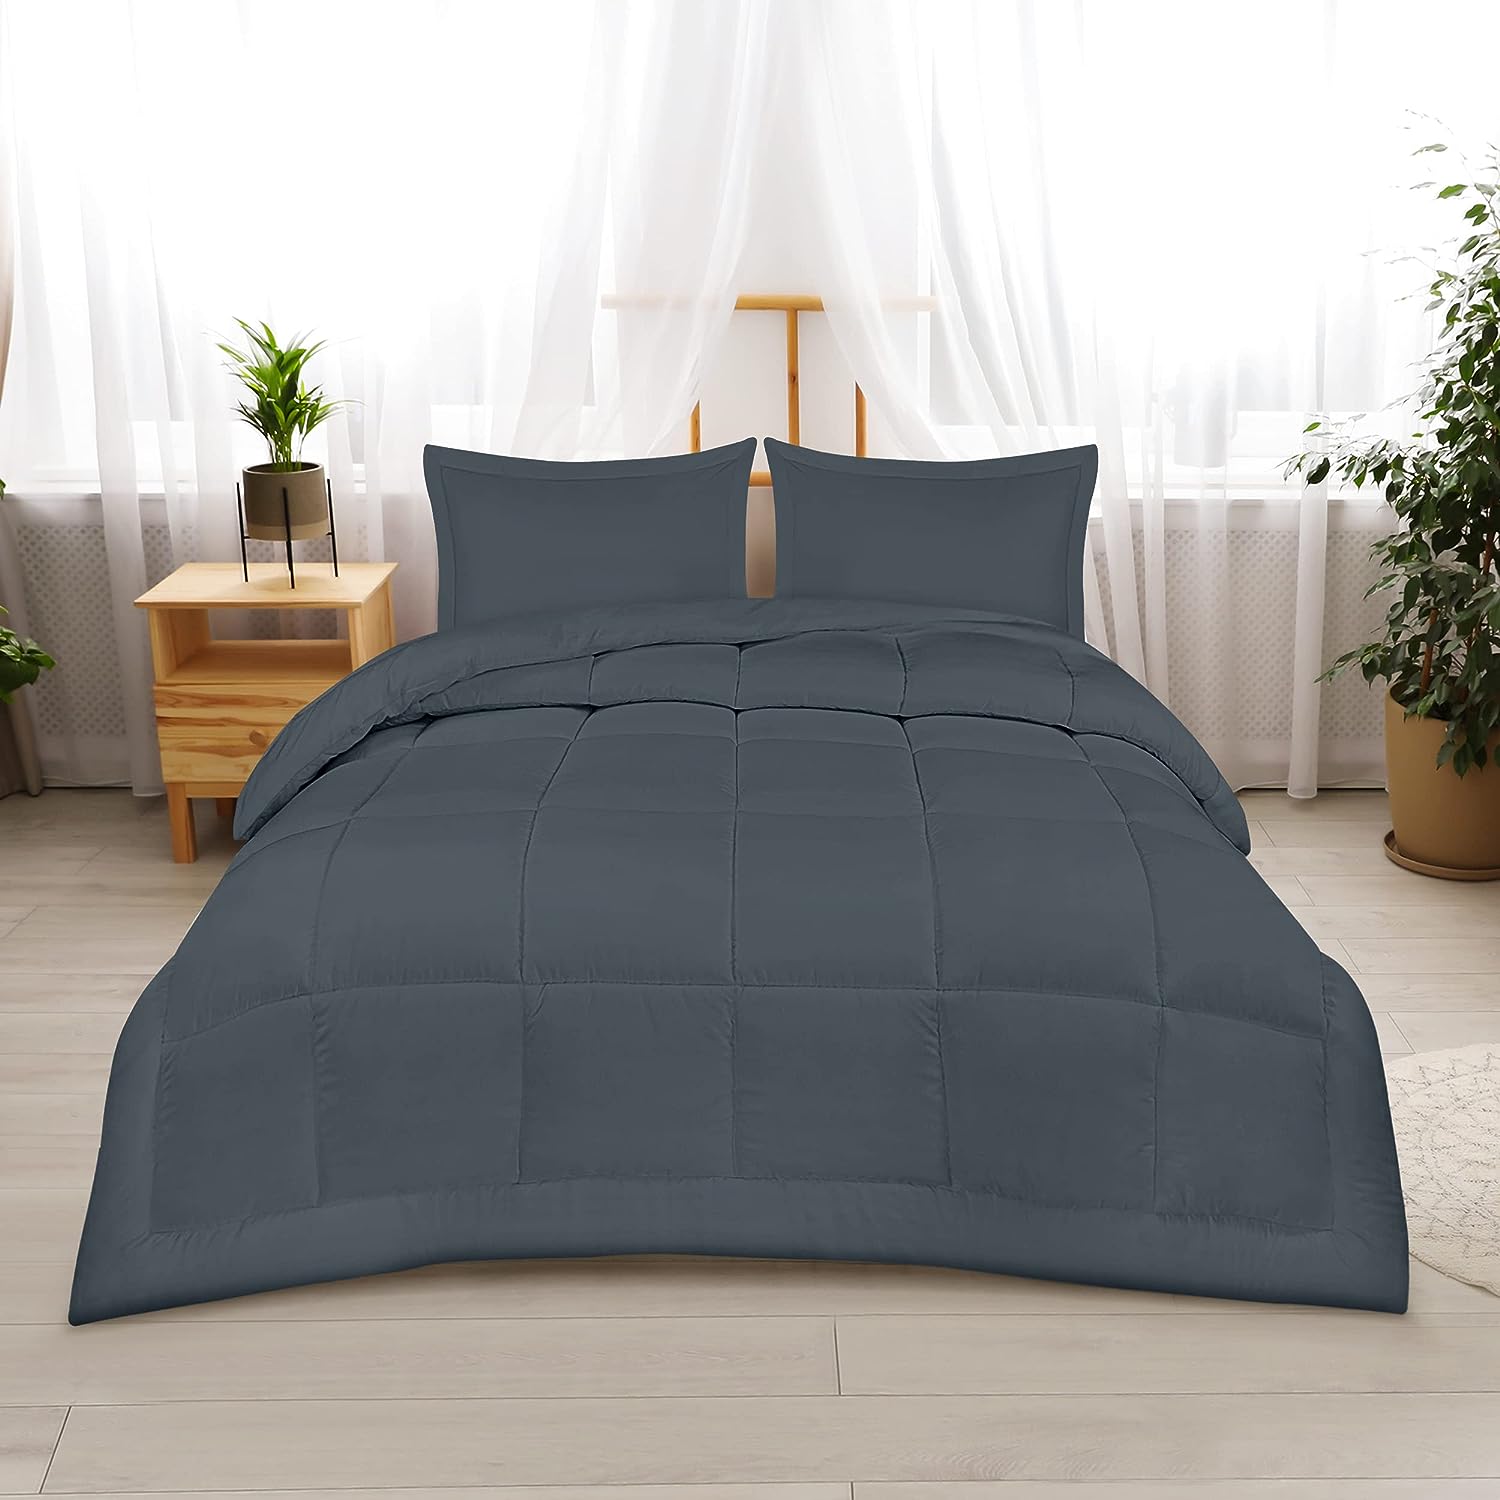 Utopia Bedding Queen Comforter Set with 2 Pillow Vietnam